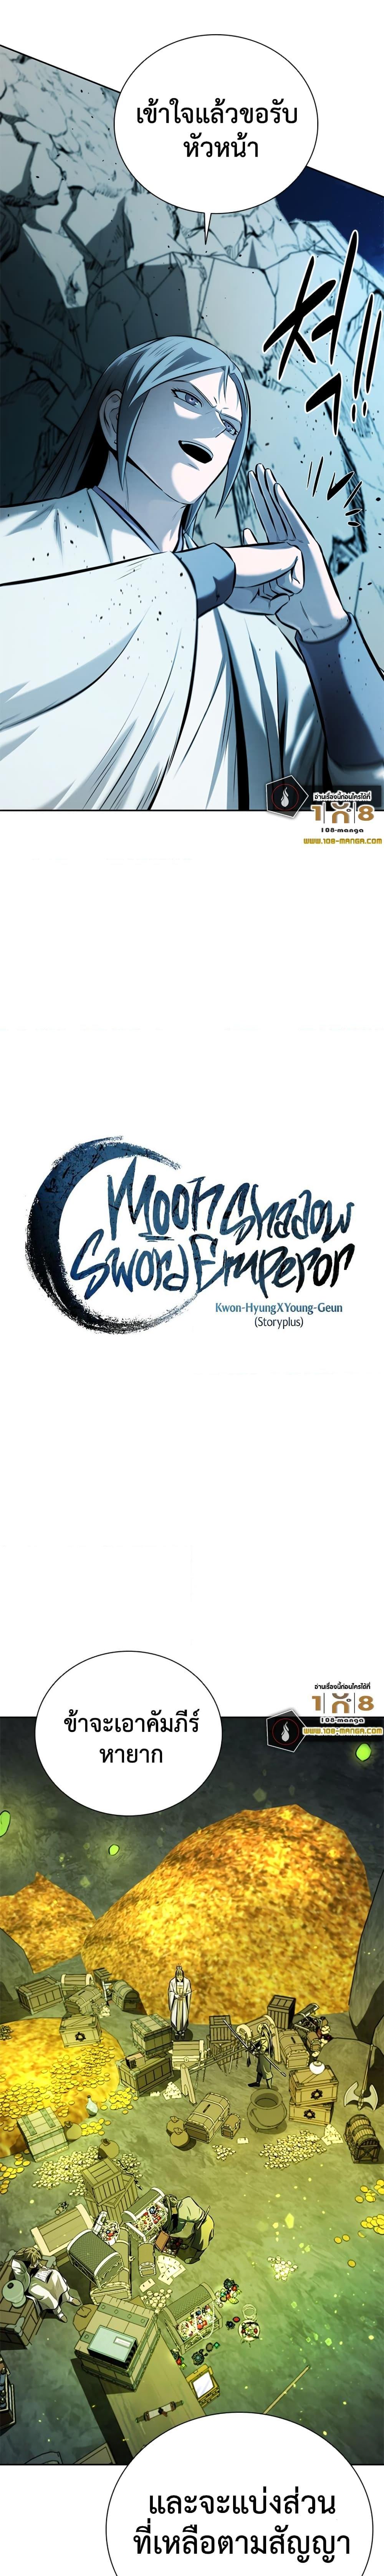 Moon Shadow Sword Emperor 48 10